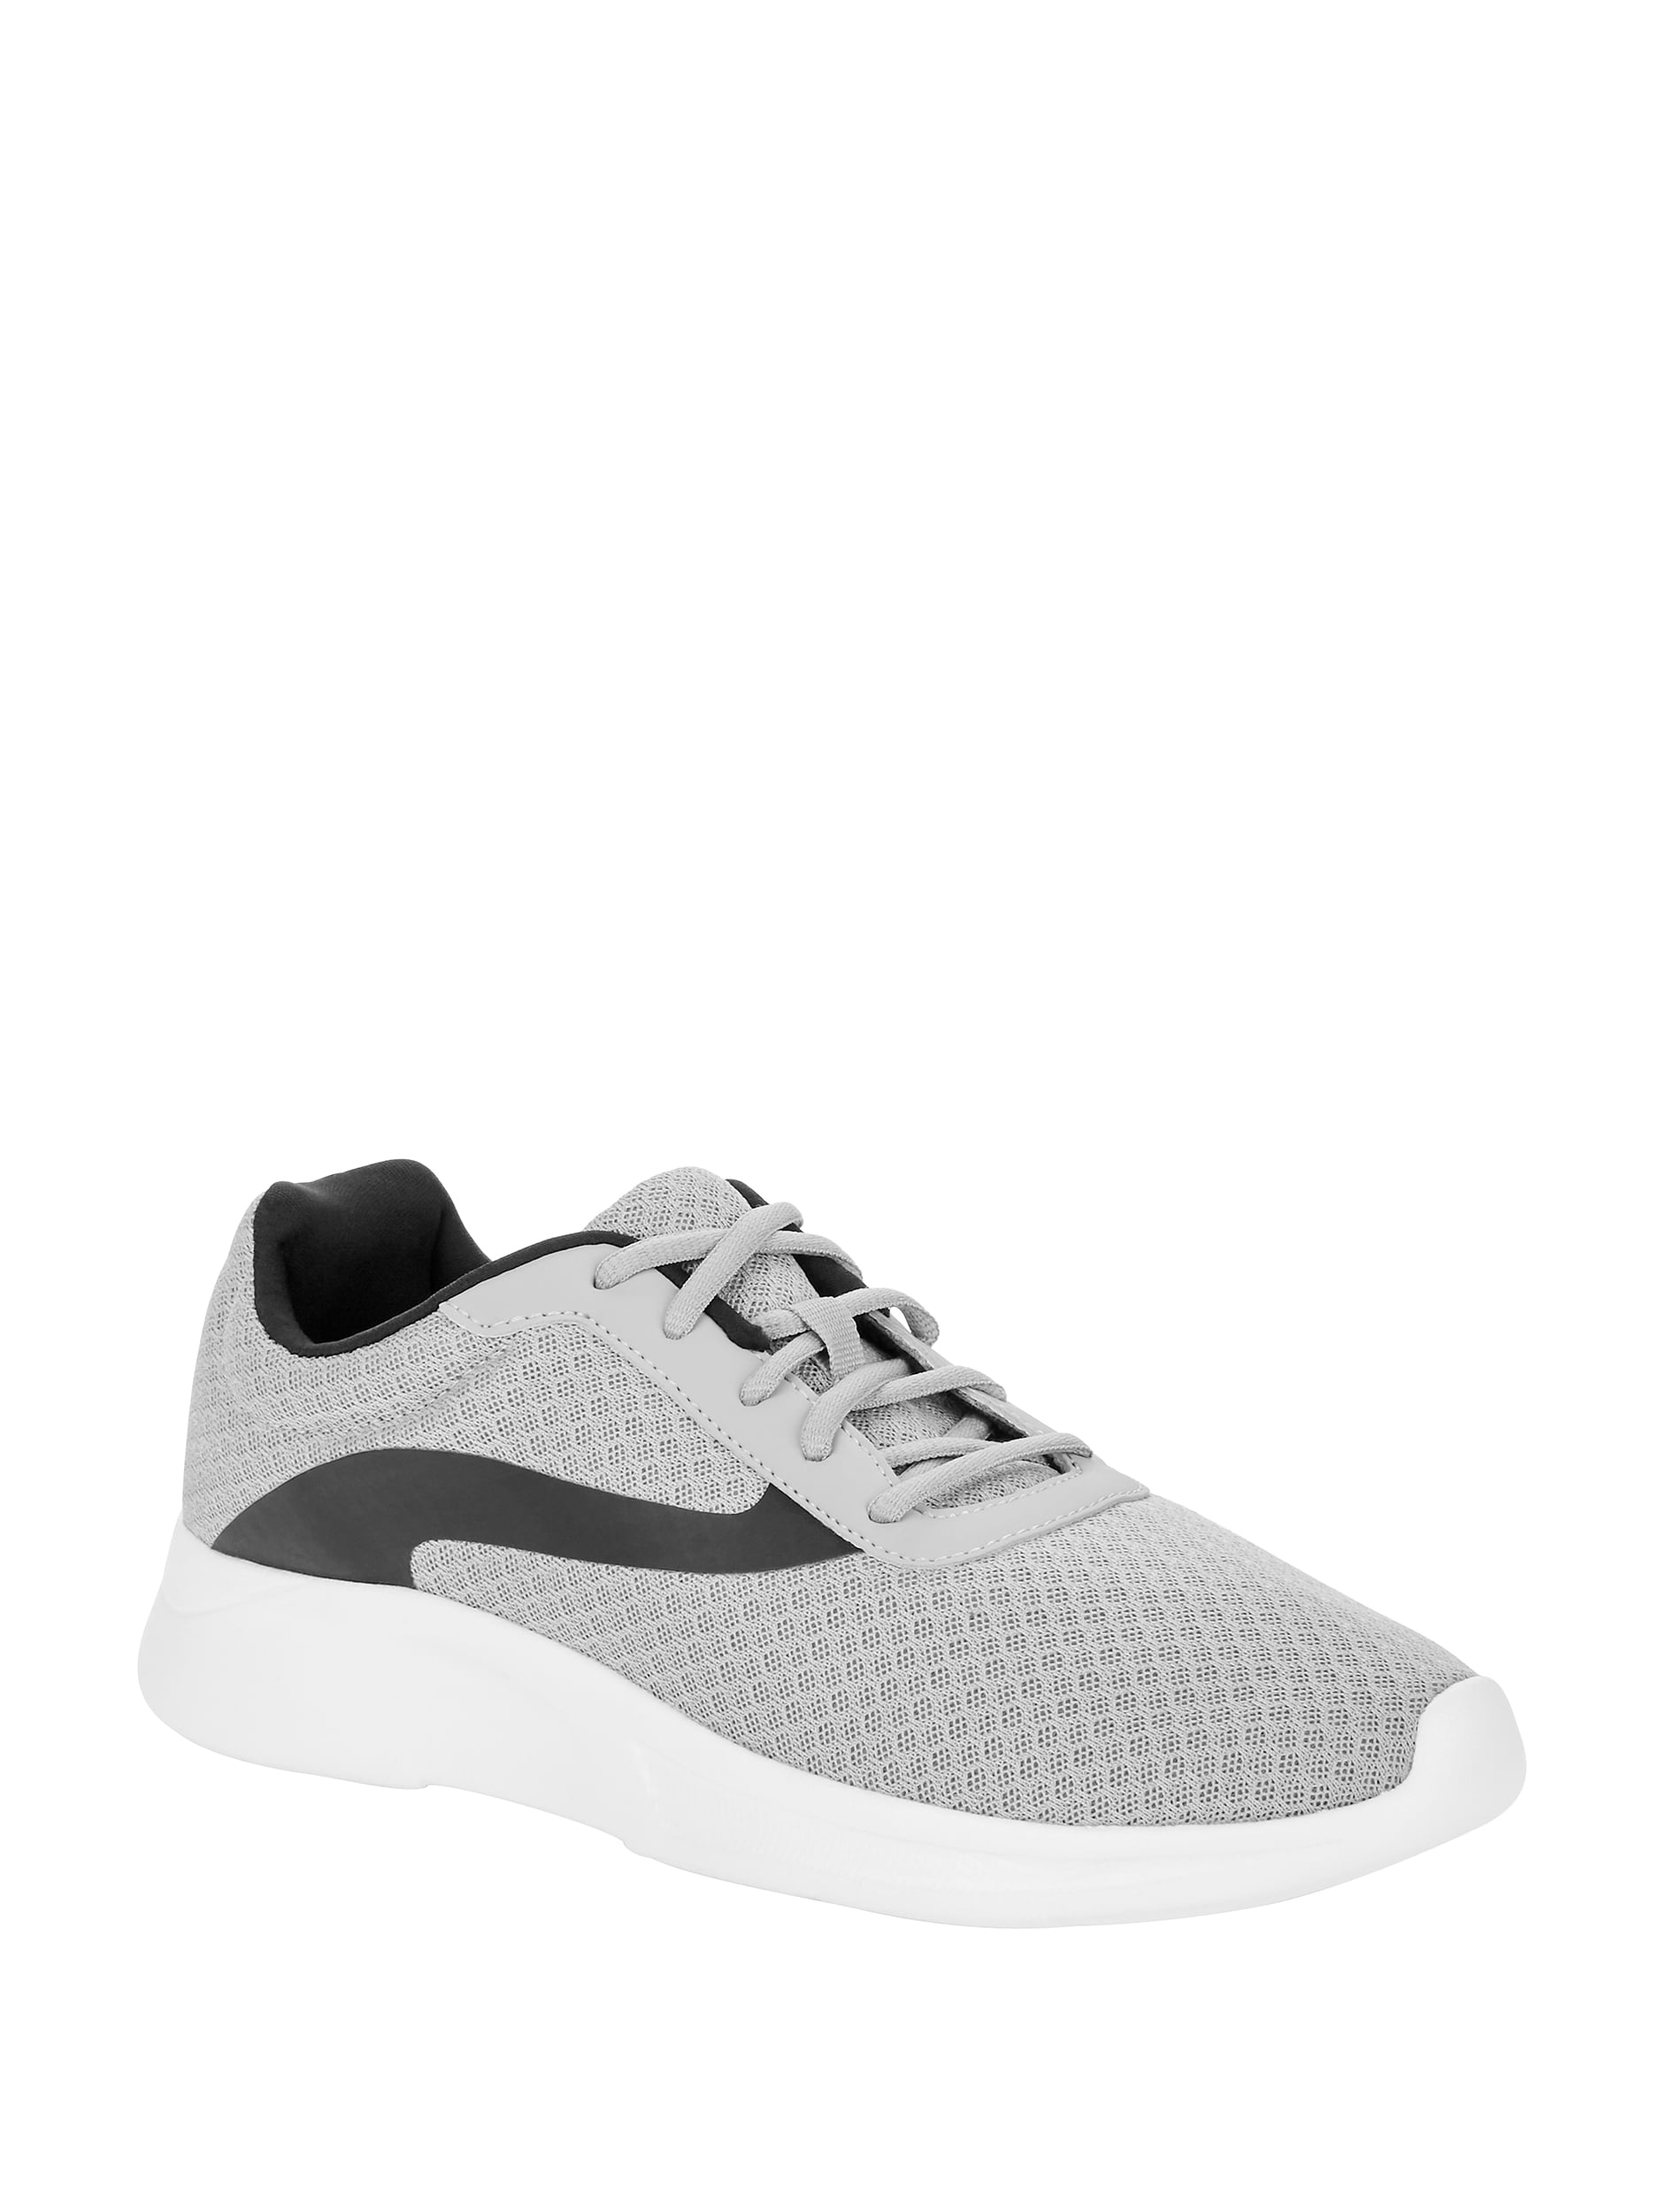 Basic Athletic Shoe - Walmart.com 